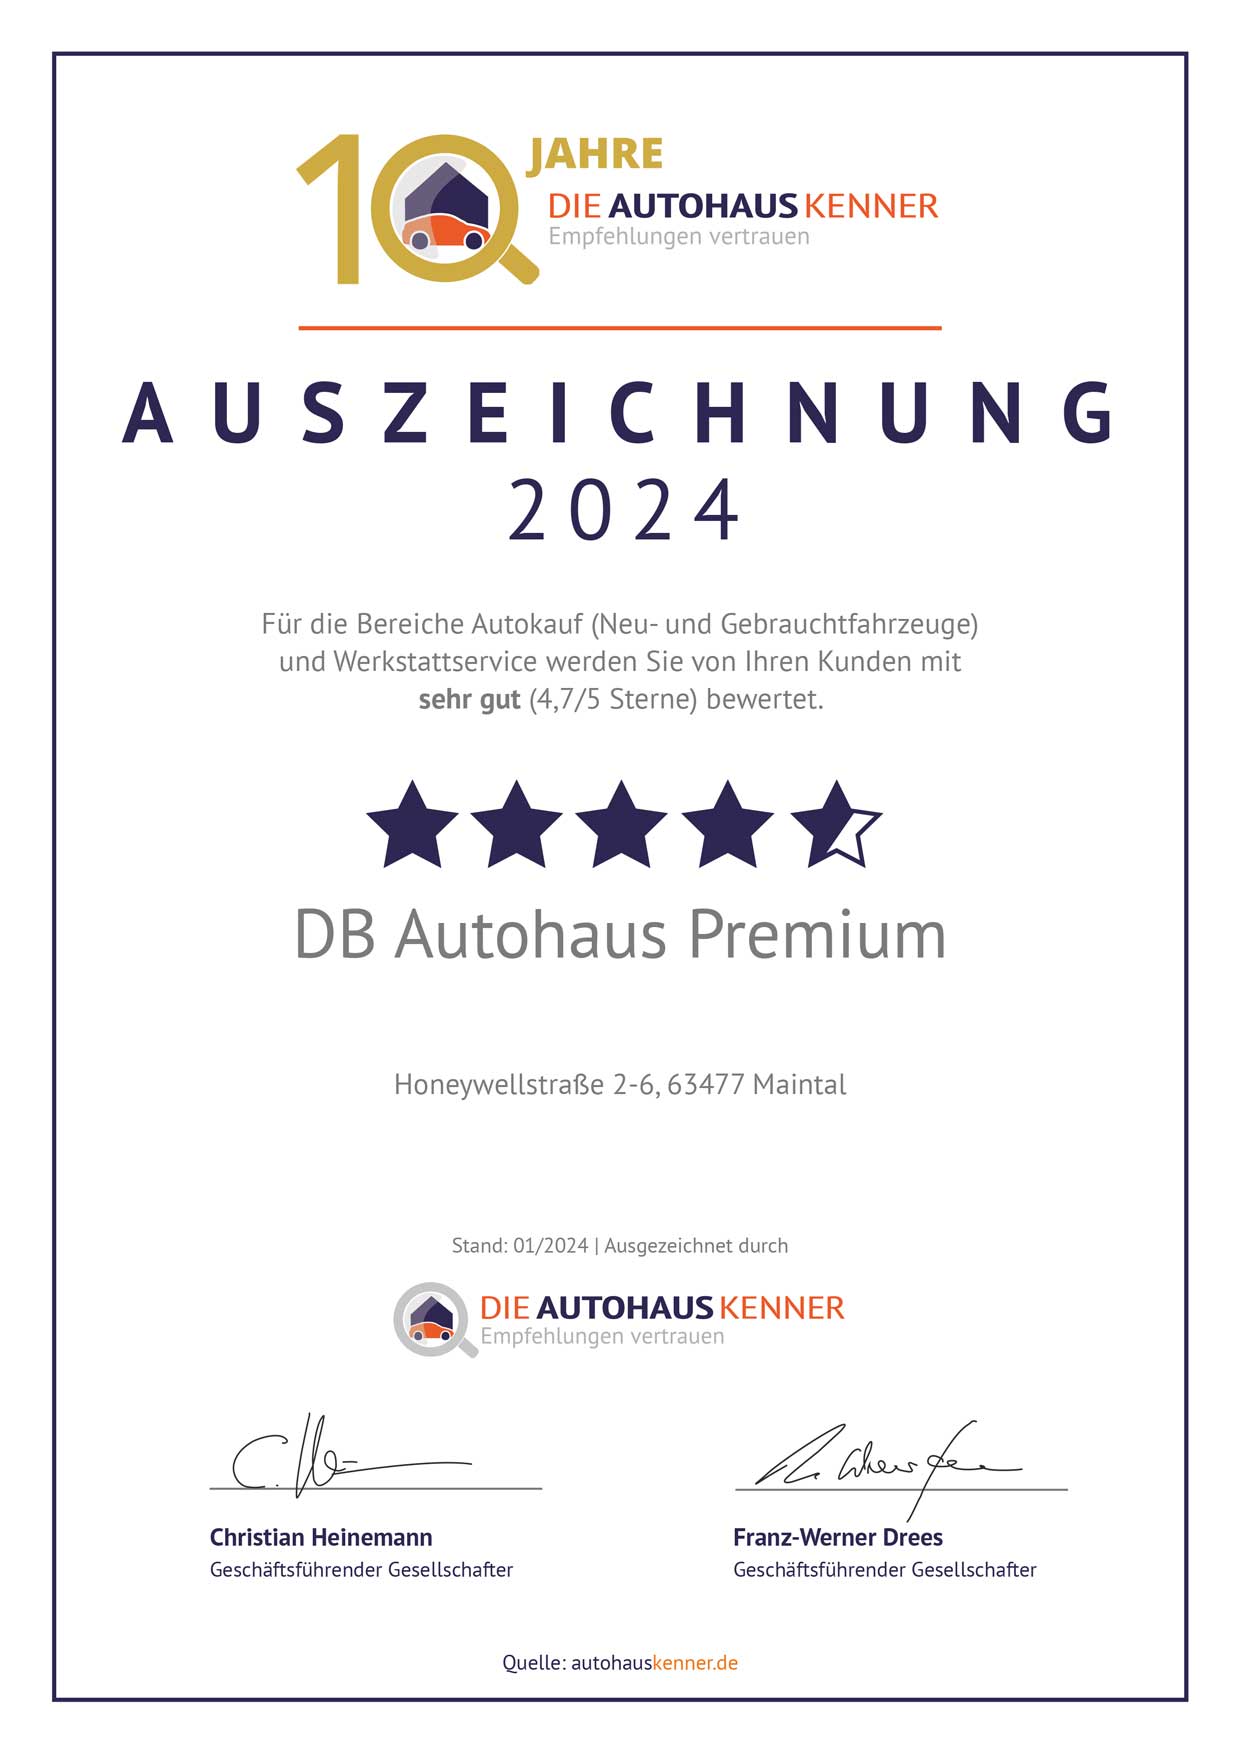 Auszeichnung von Autohauskenner für DB Autohaus Premium Maintal